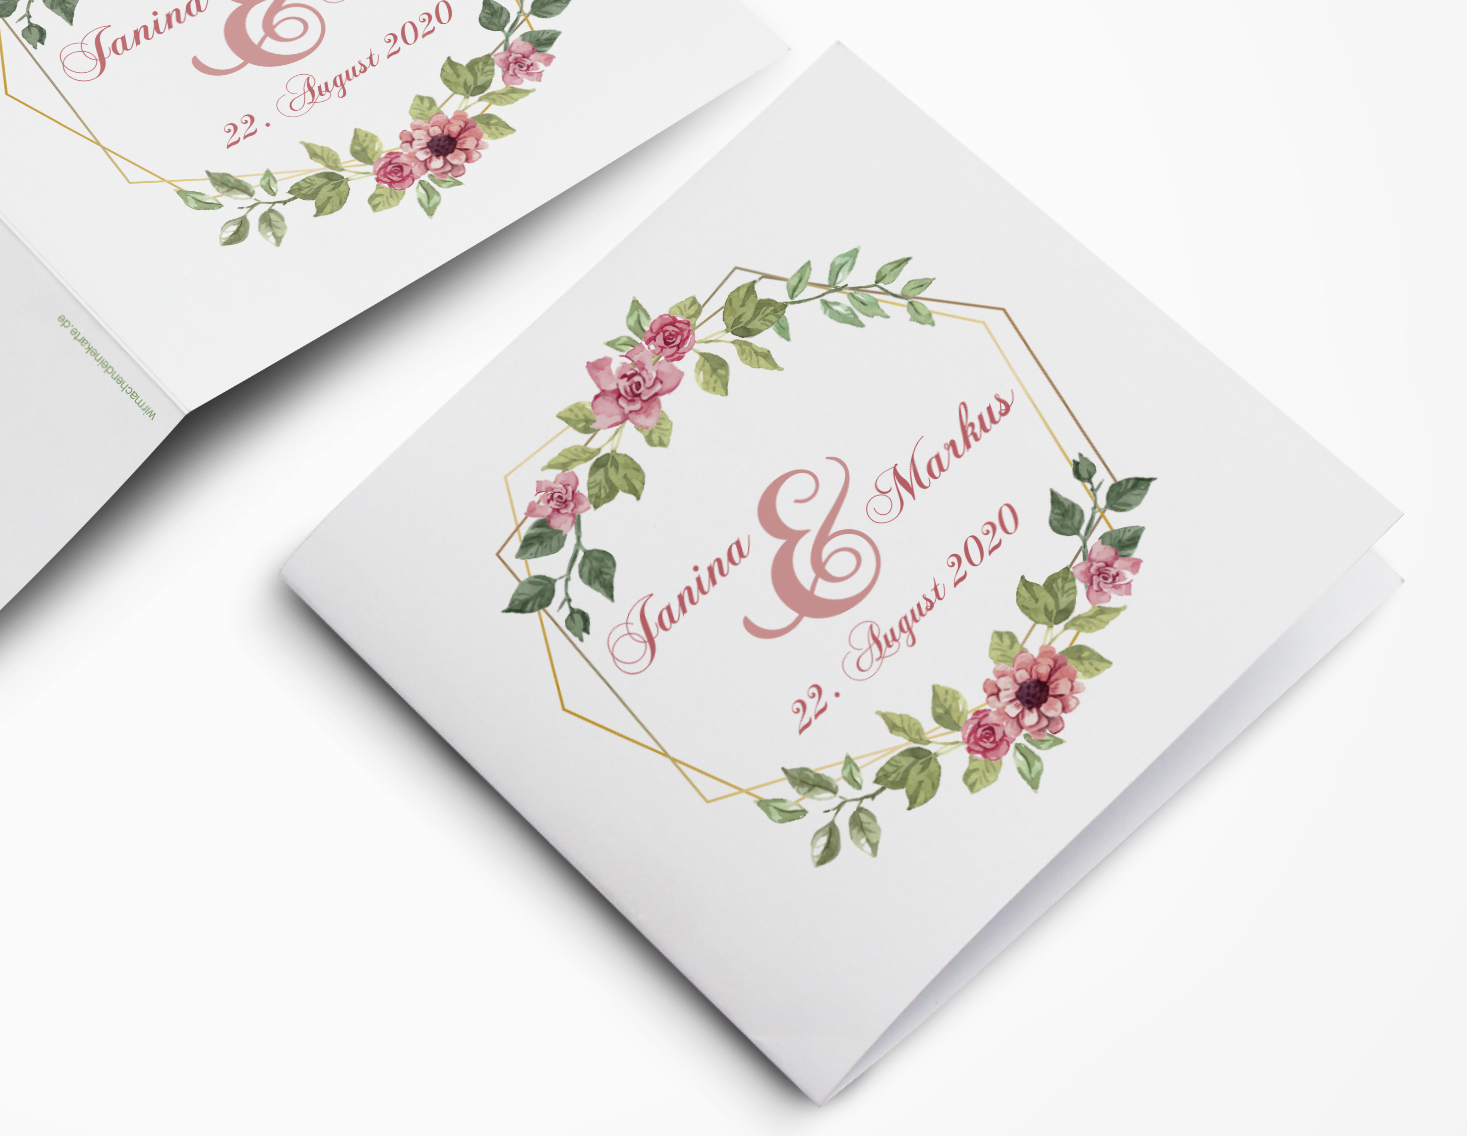 Einladungskarten Hochzeit Hochzeitskarten Mit Druck Blumen Raute Hochzeitseinladungen Hochzeit Wirmachendeinekarte